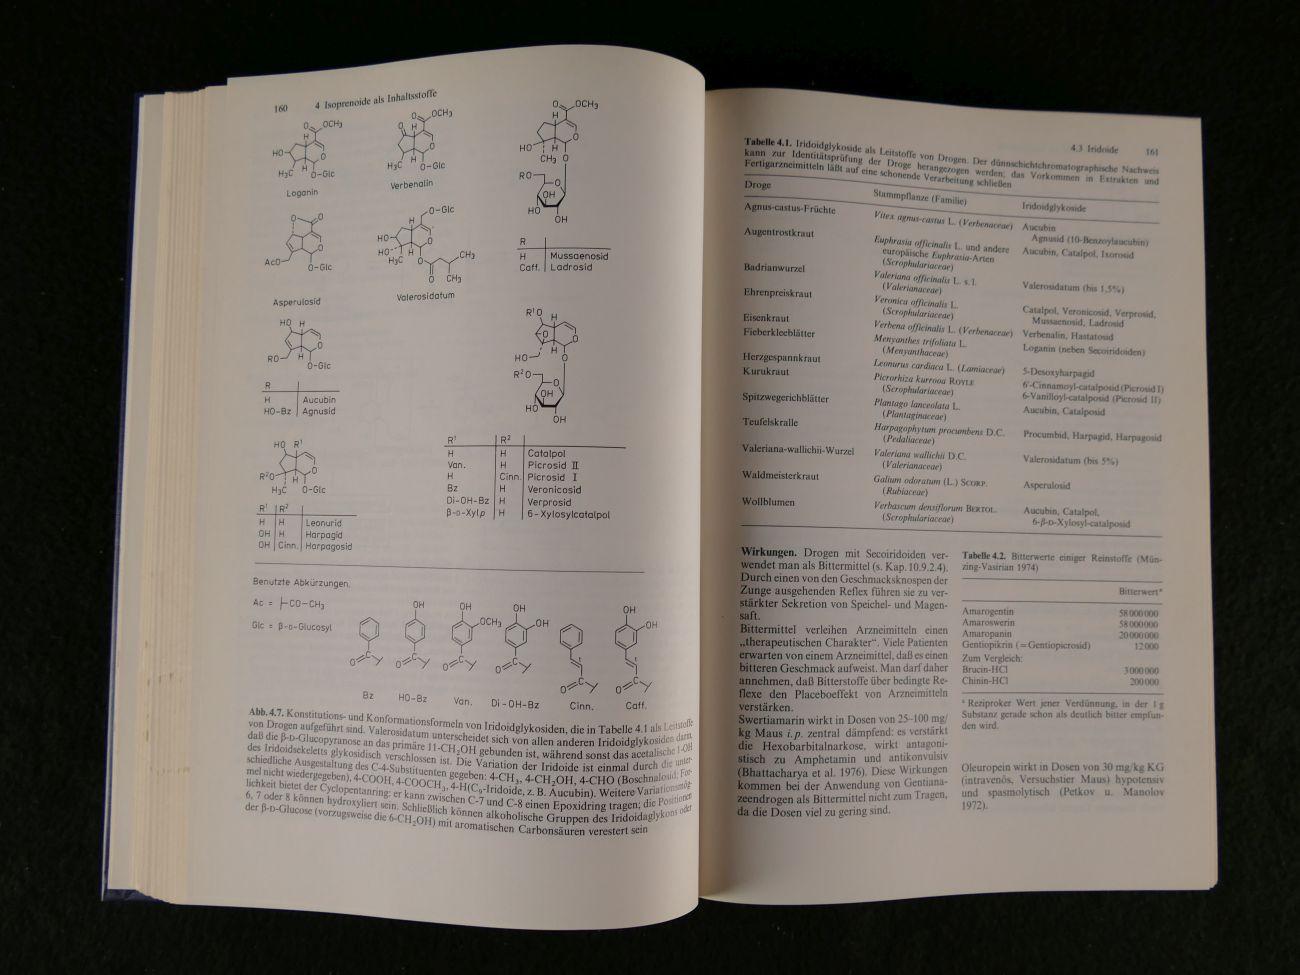 Hansel, Rudolf / Steinegger, Ernst - Lehrbuch der Pharmakognosie und Phytopharmazie